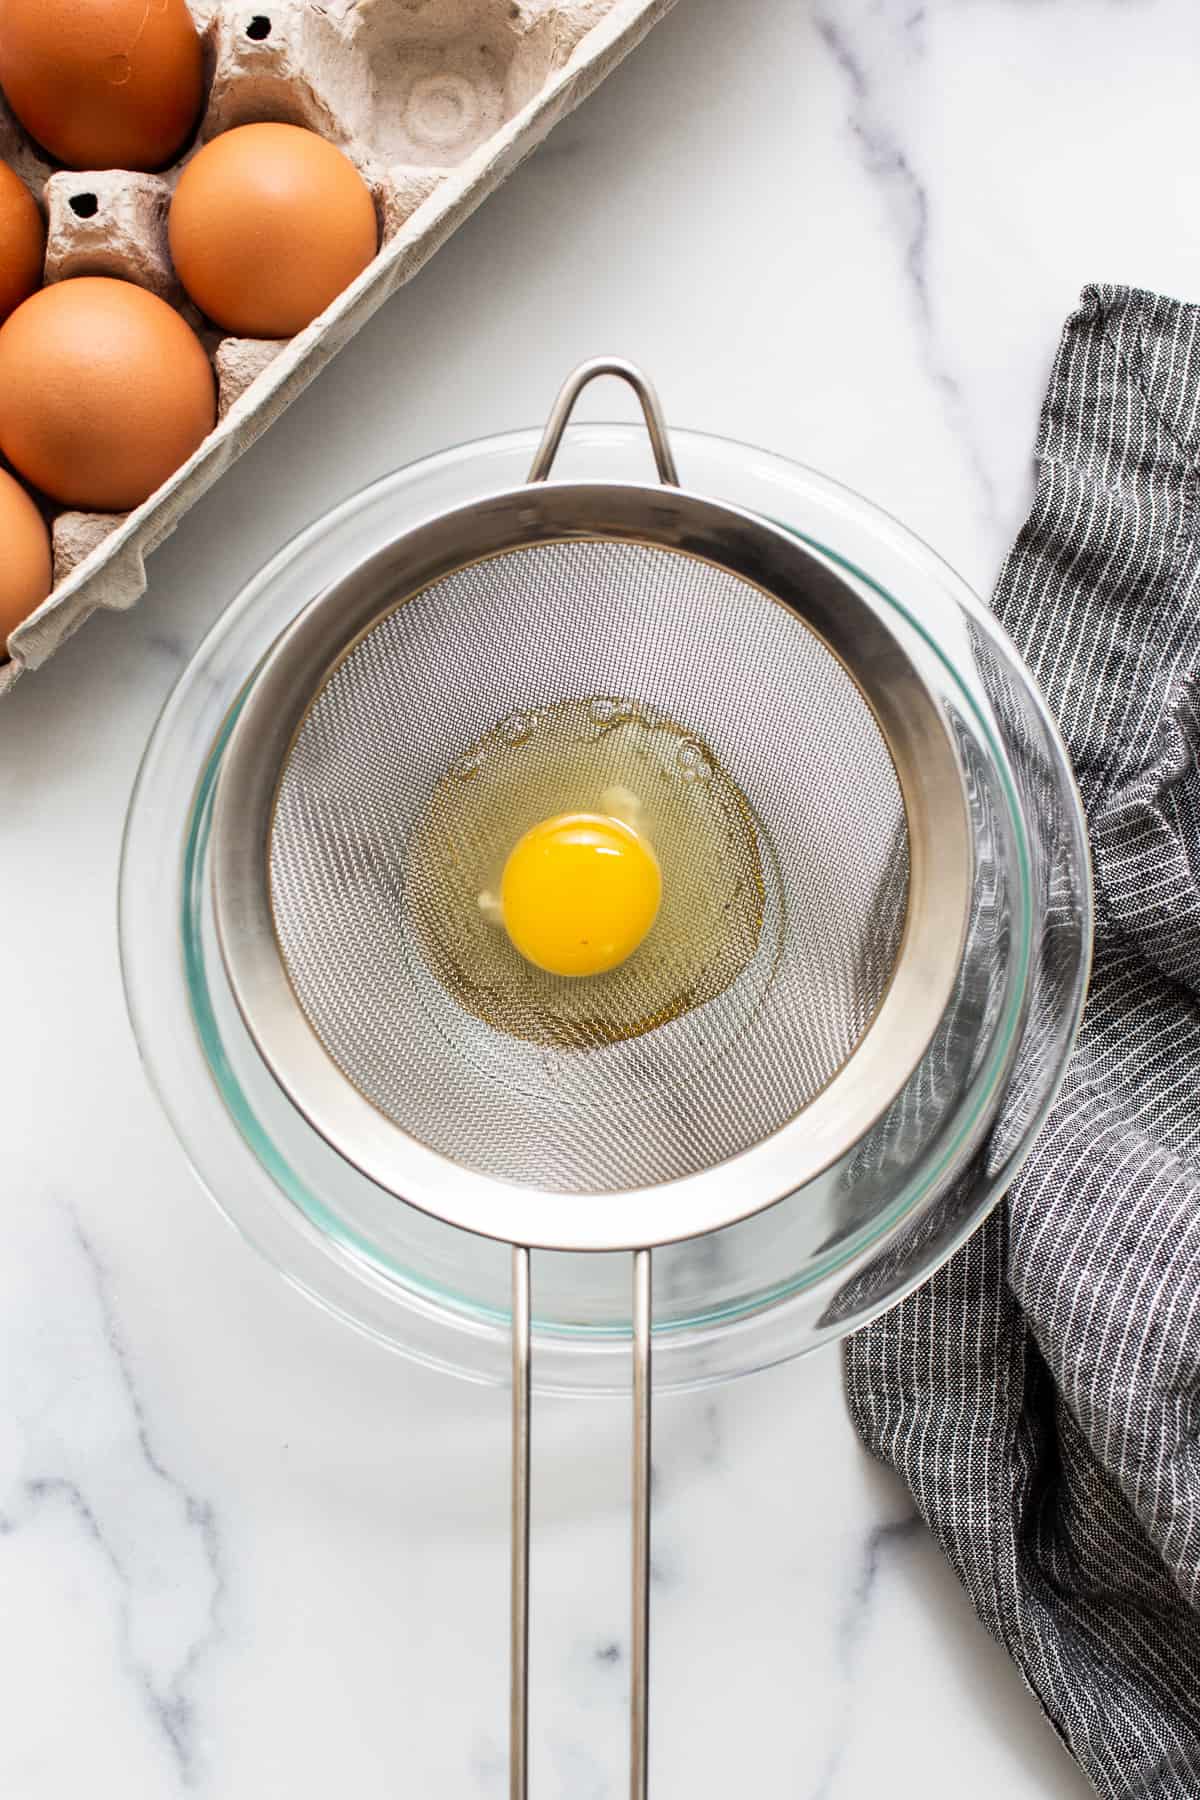 تخم مرغ خام در یک صافی توری.